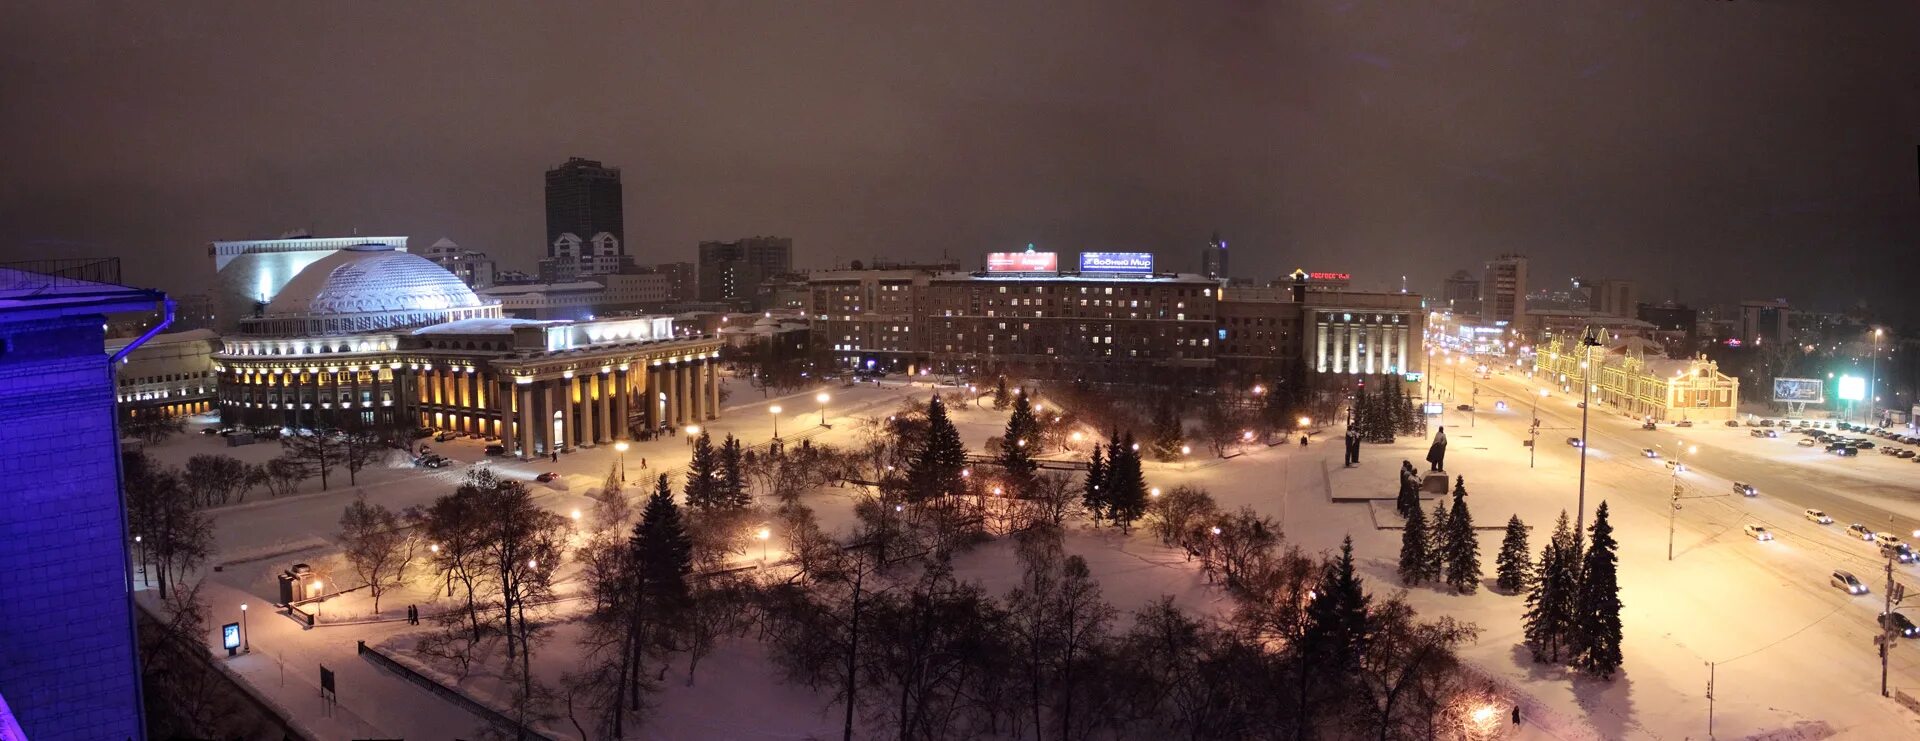 Площадь Ленина Новосибирск панорама. Площадь Ленина Новосибирск Сибирь. Новосибирск площадь Ленина зима. Новосибирск, оперный театр, площадь Ленина.